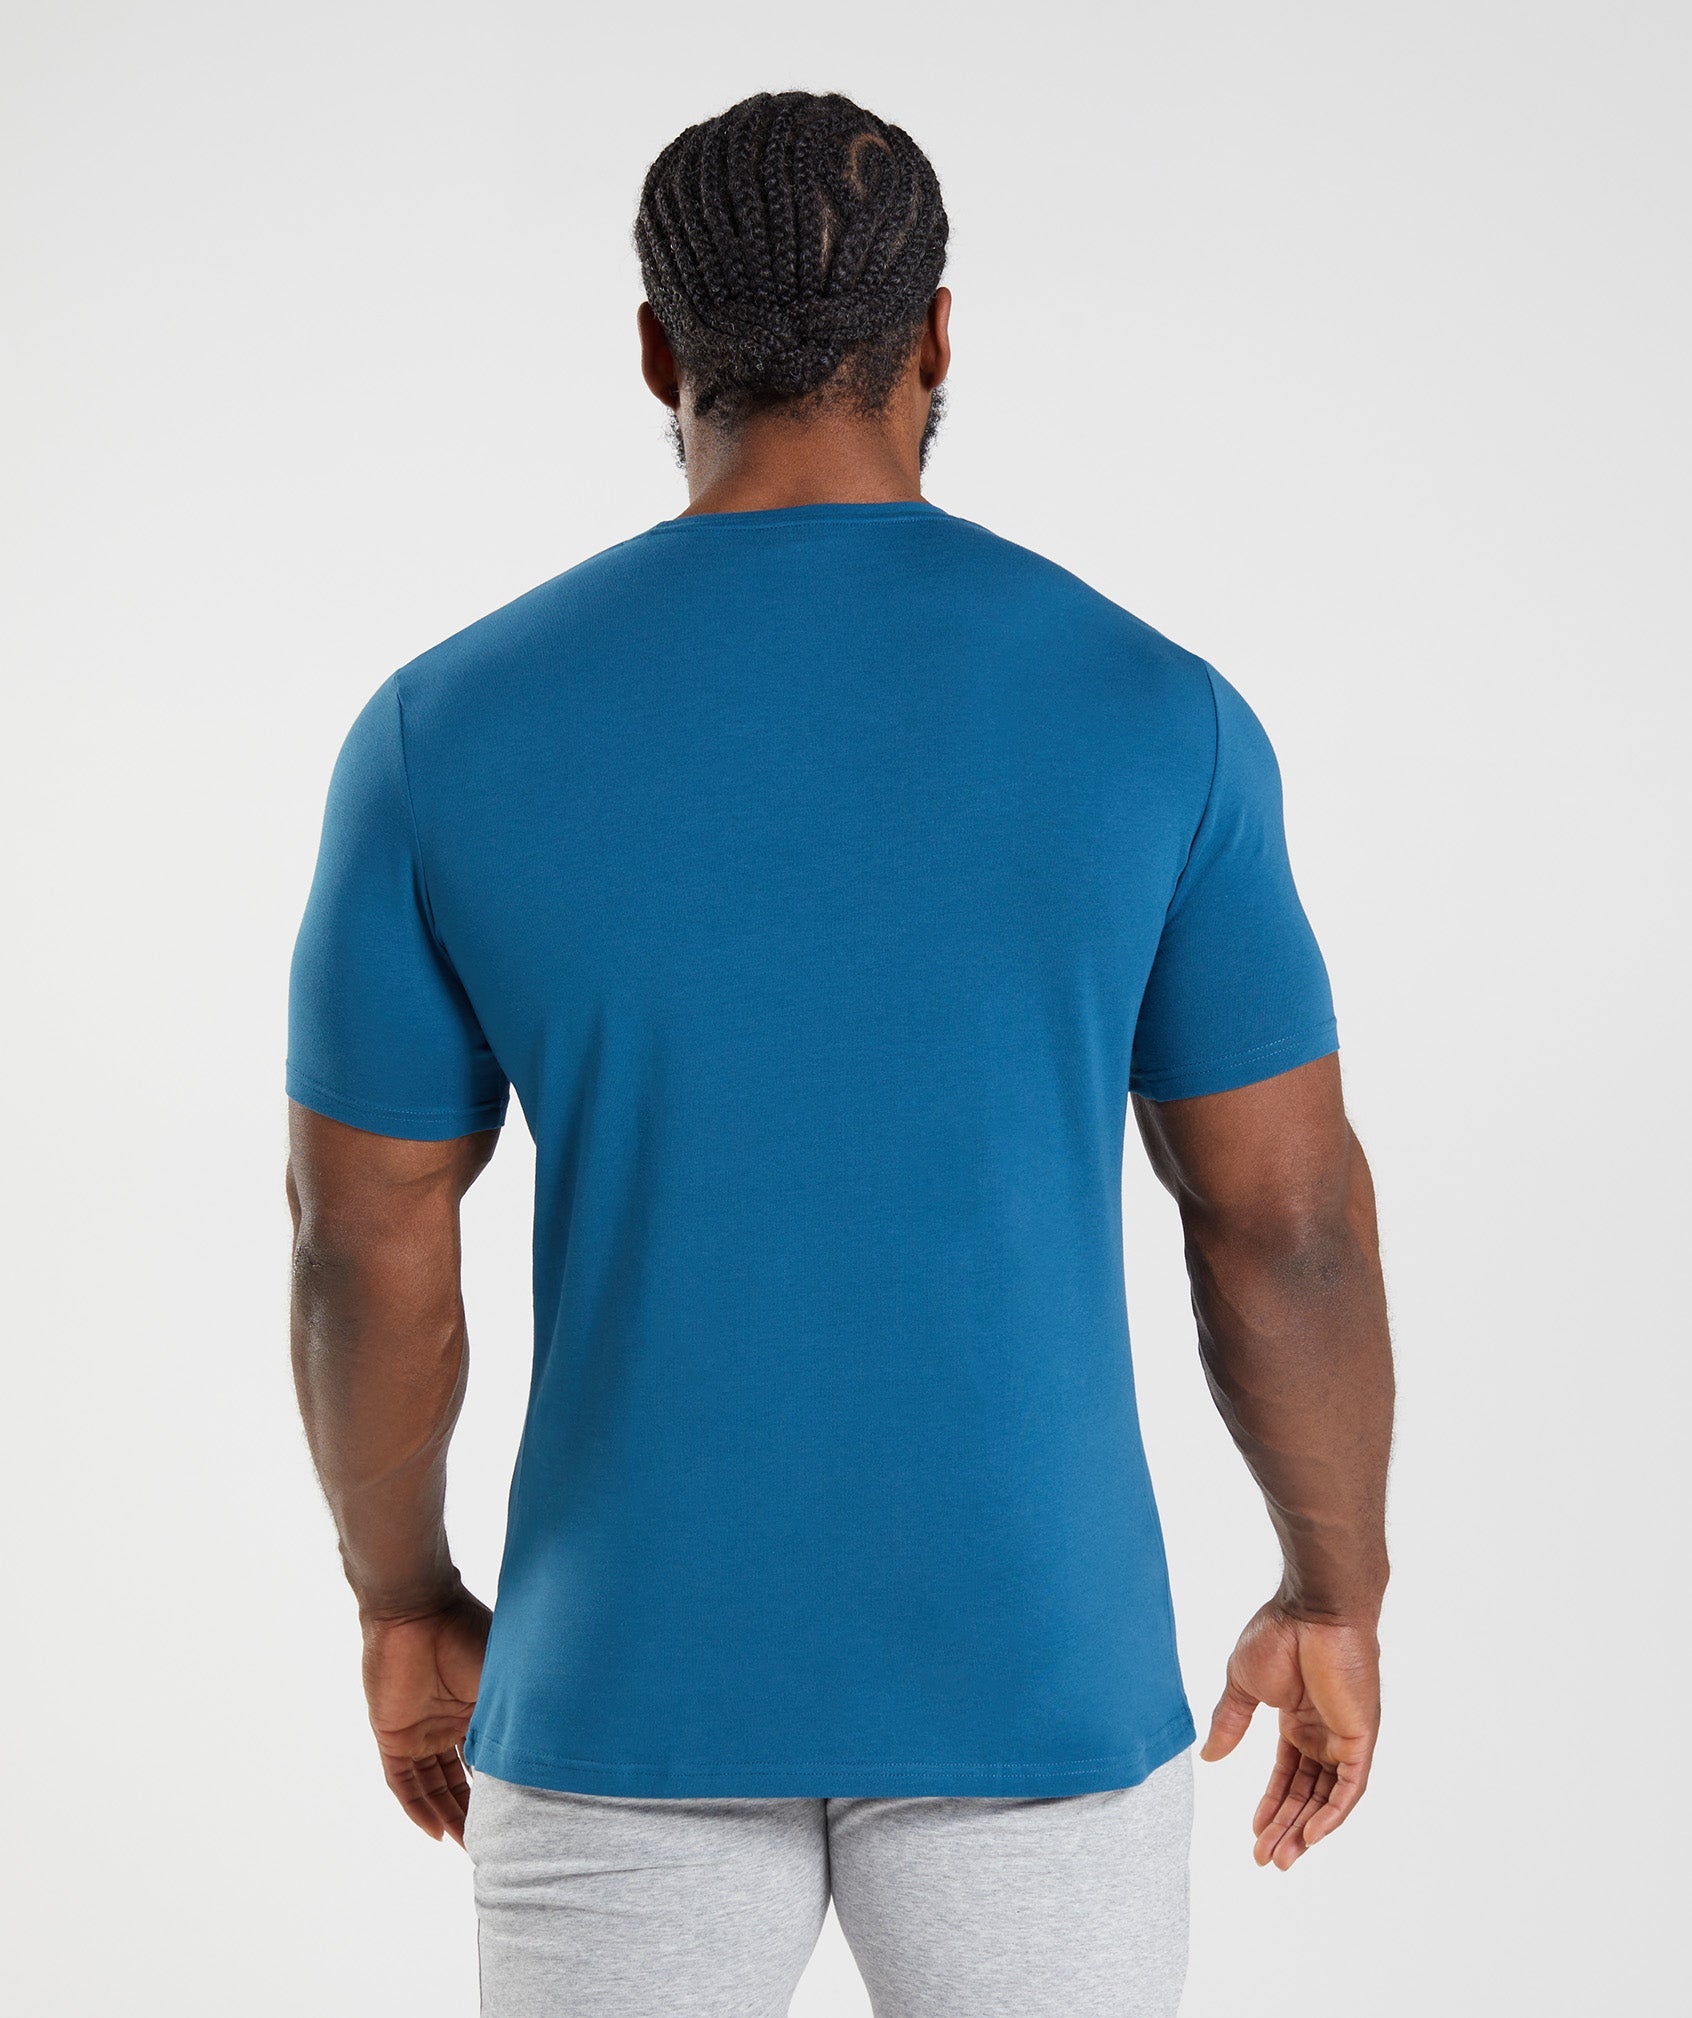 Essential T-Shirt in Atlantic Blue